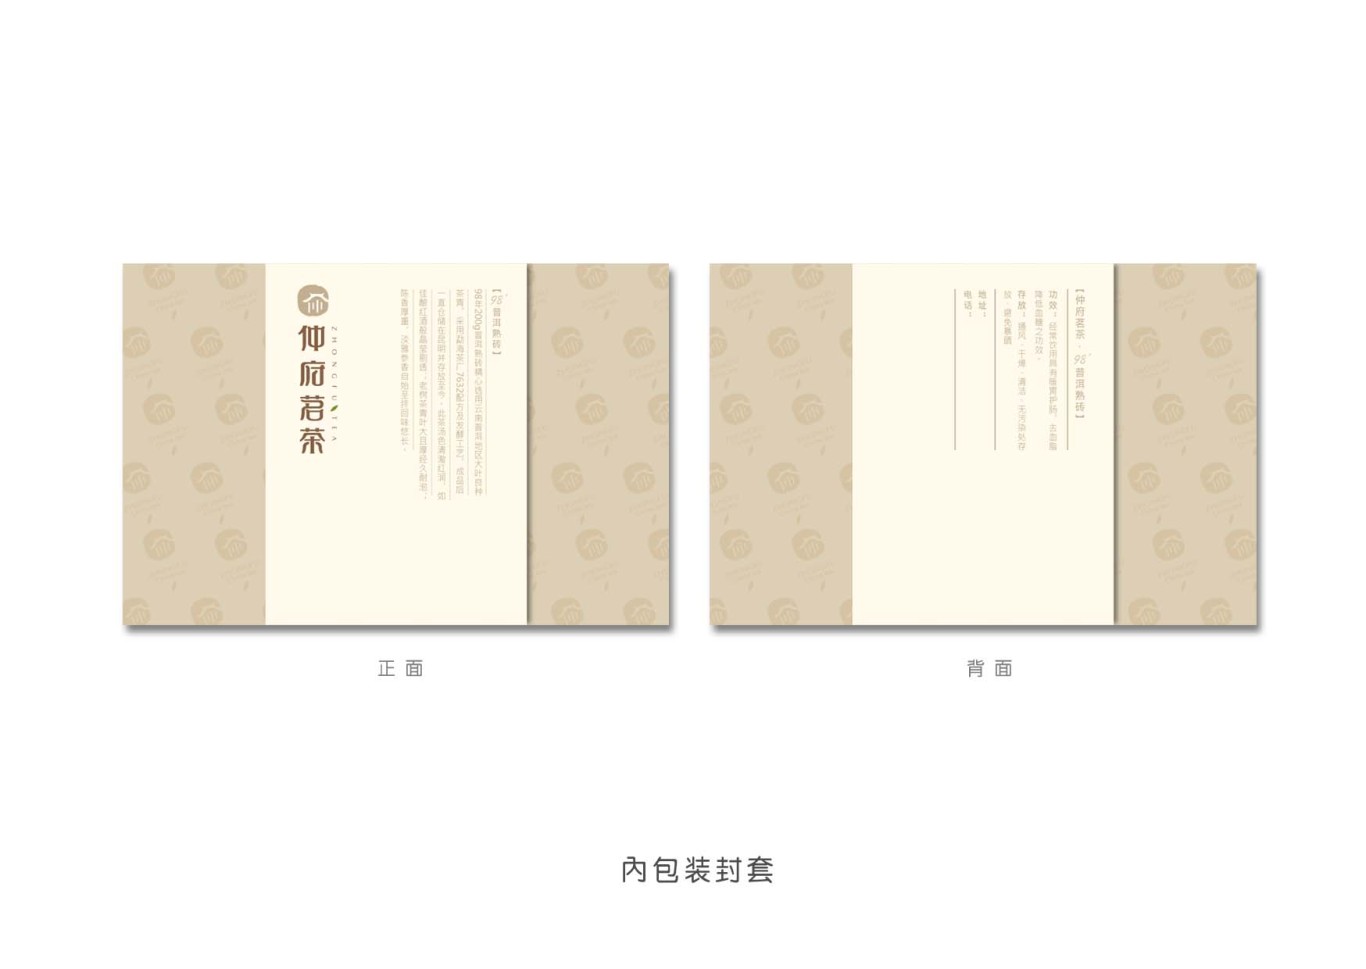 仲府茗茶 高端茶业品牌形象设计图31